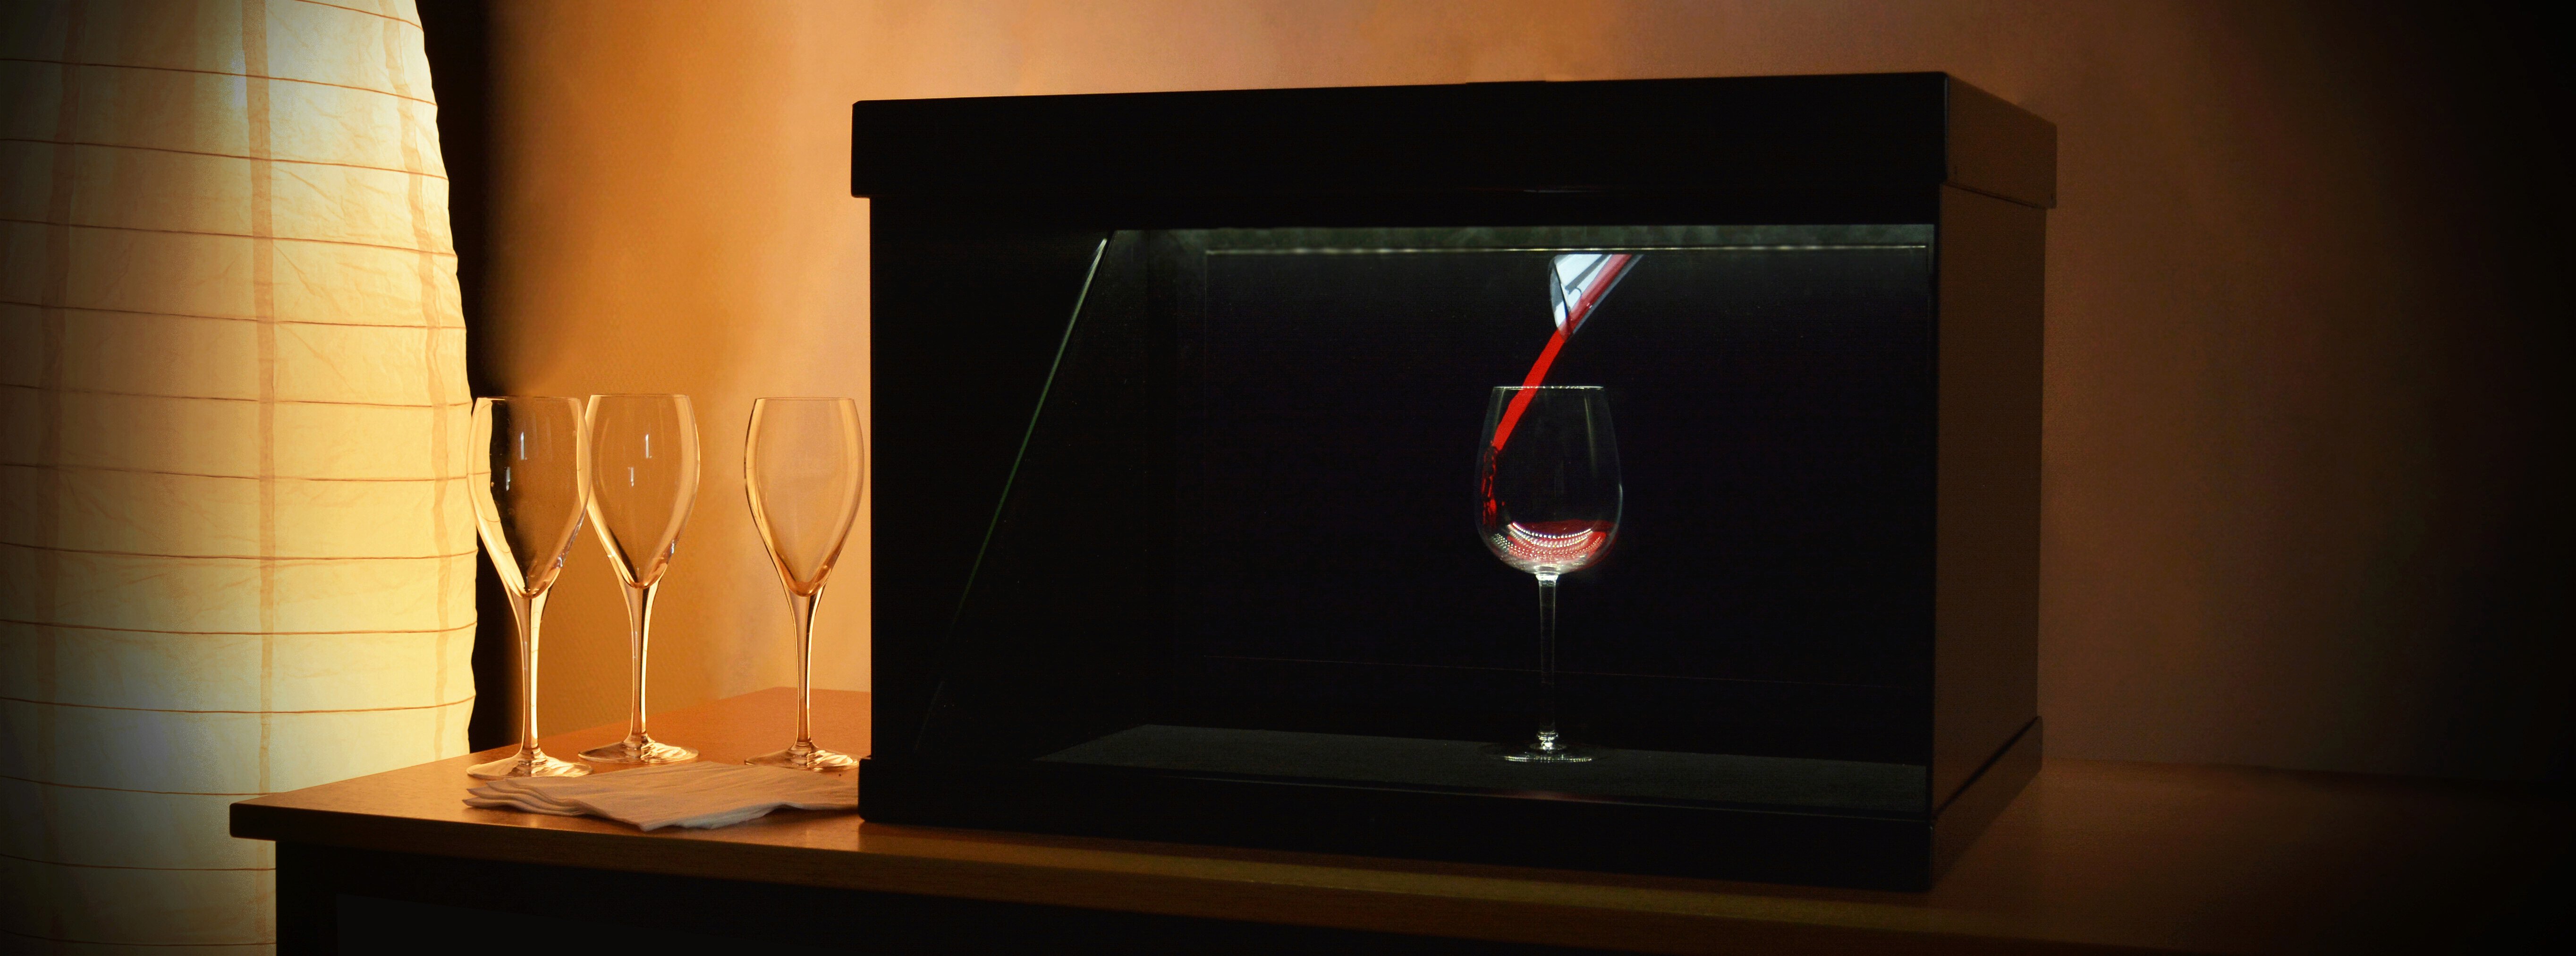 Le verre Krysta entourré d'un mapping holographique